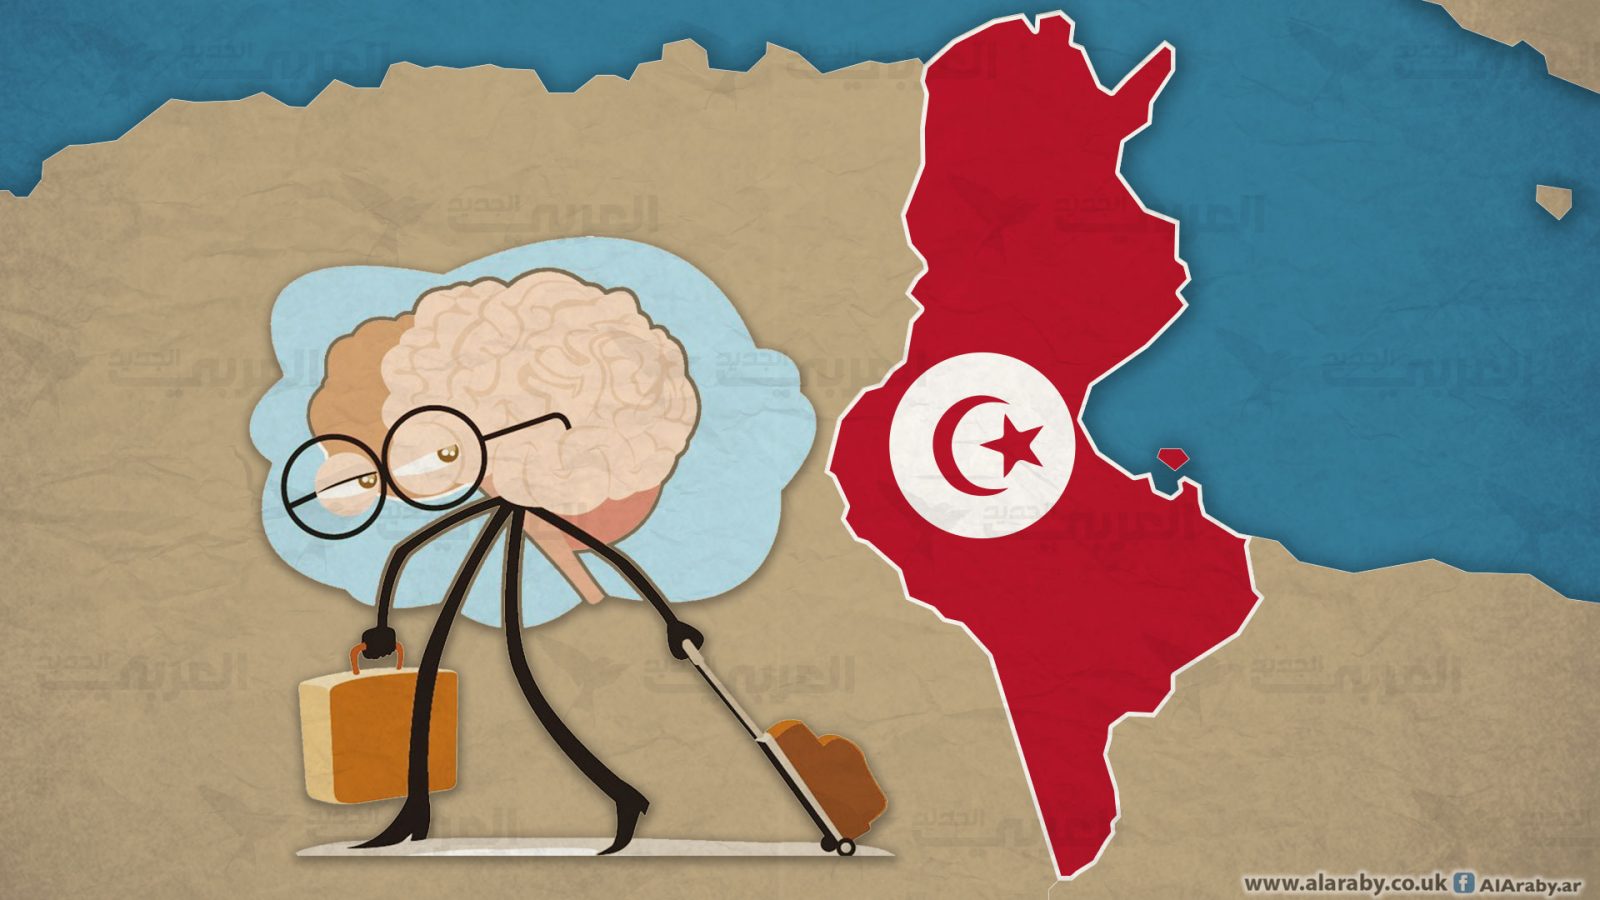 رقم مفزع/95 ألف كفاءة تونسية غادروا البلاد منذ 2011